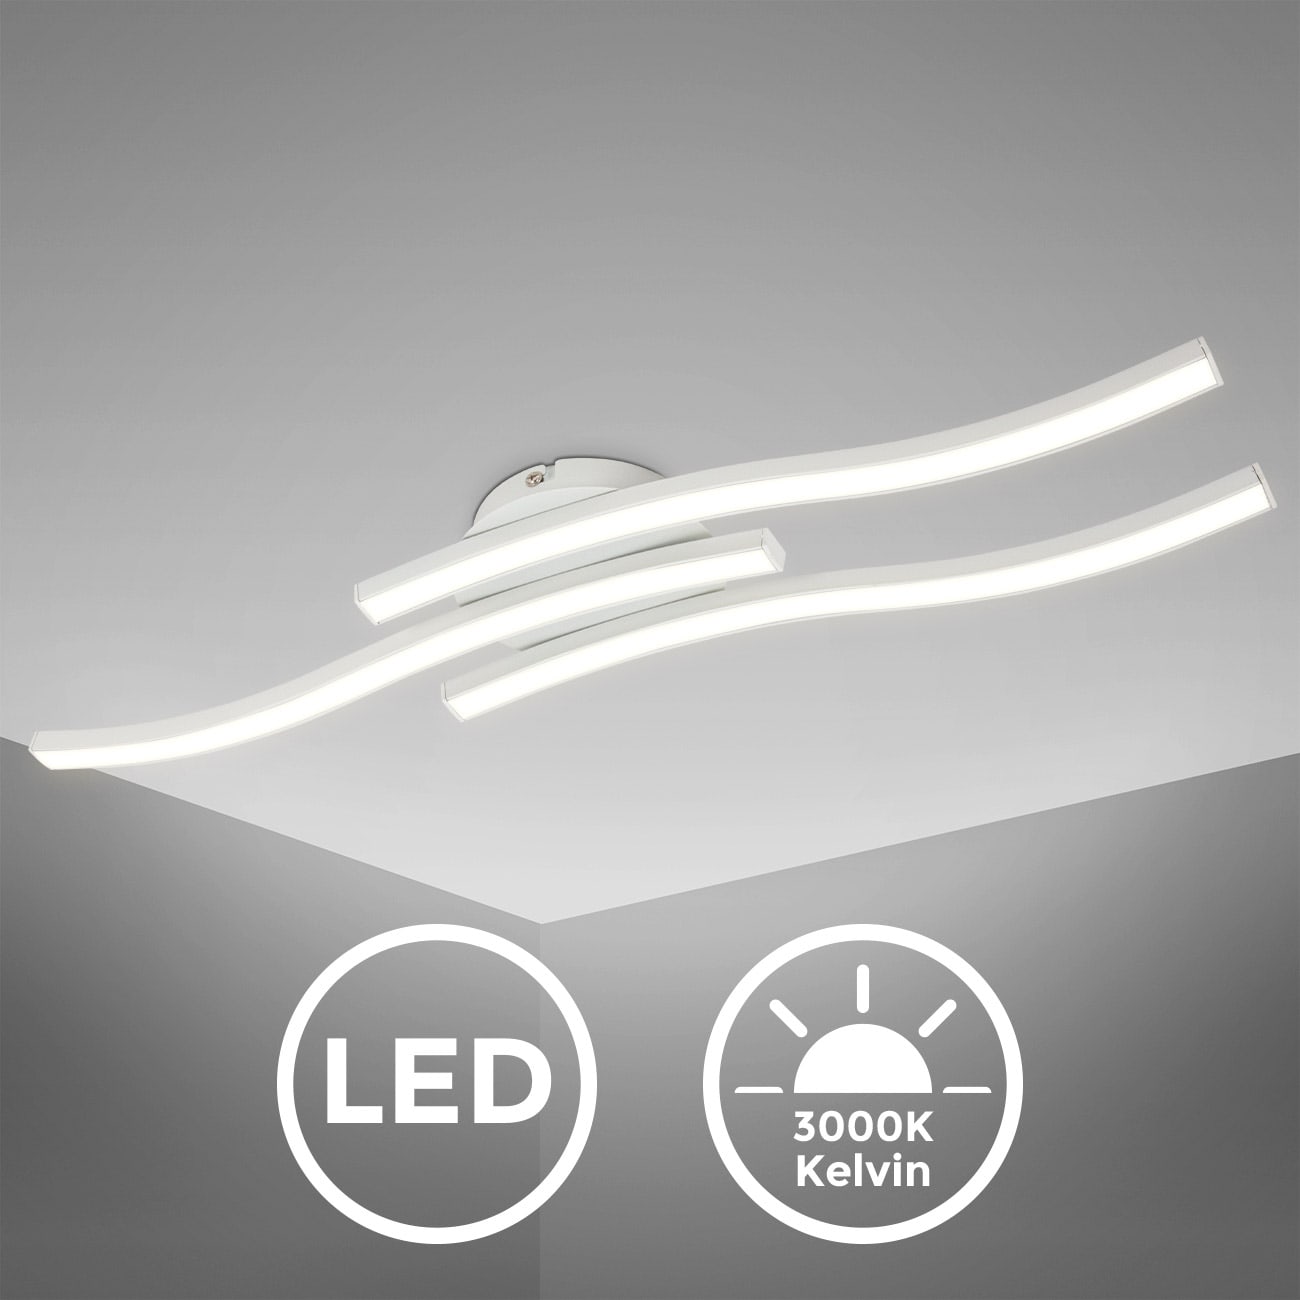 LED Design Deckenleuchte in Wellenform 3-flammig - 3